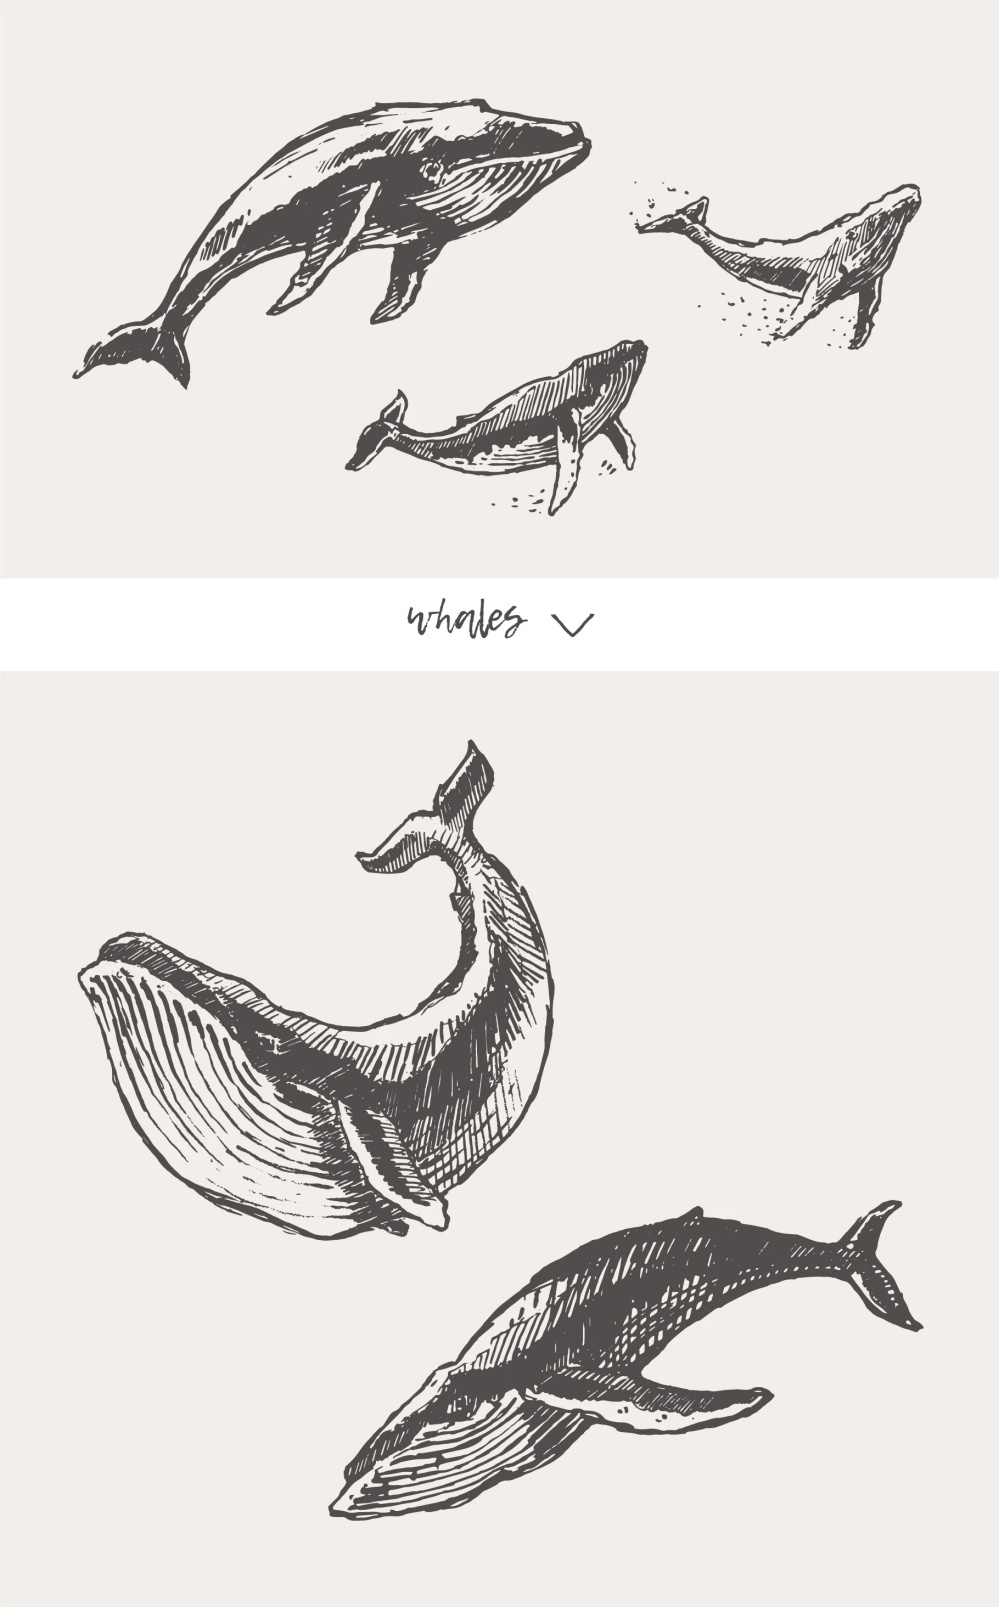 21种森林动物海洋生物插图矢量素材 图片素材 第17张